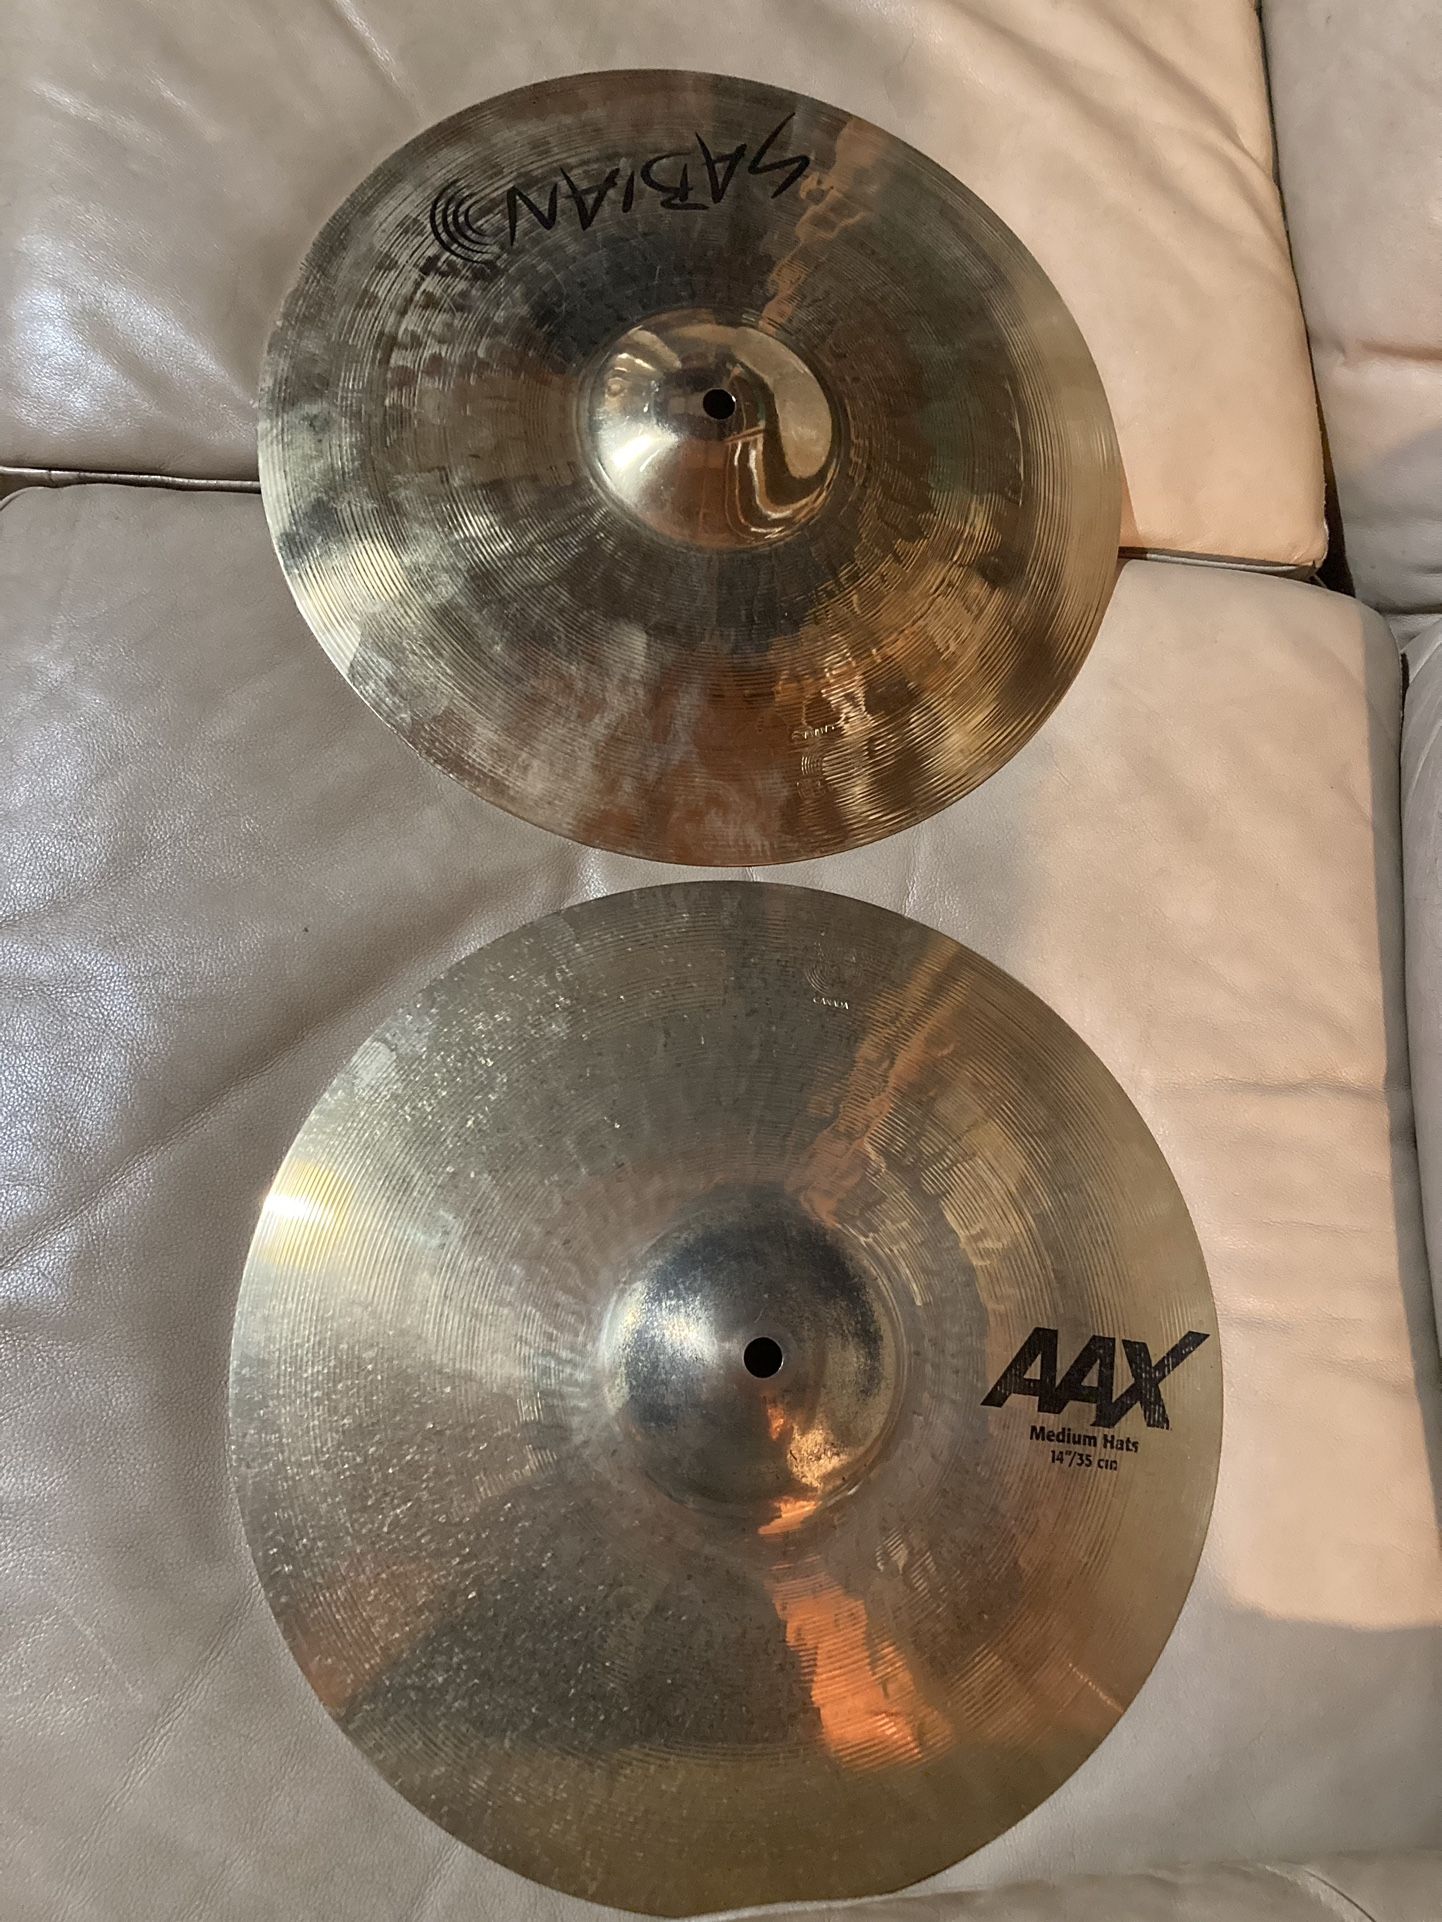 Sabian 14” AAX Medium Hi Hats Cymbals